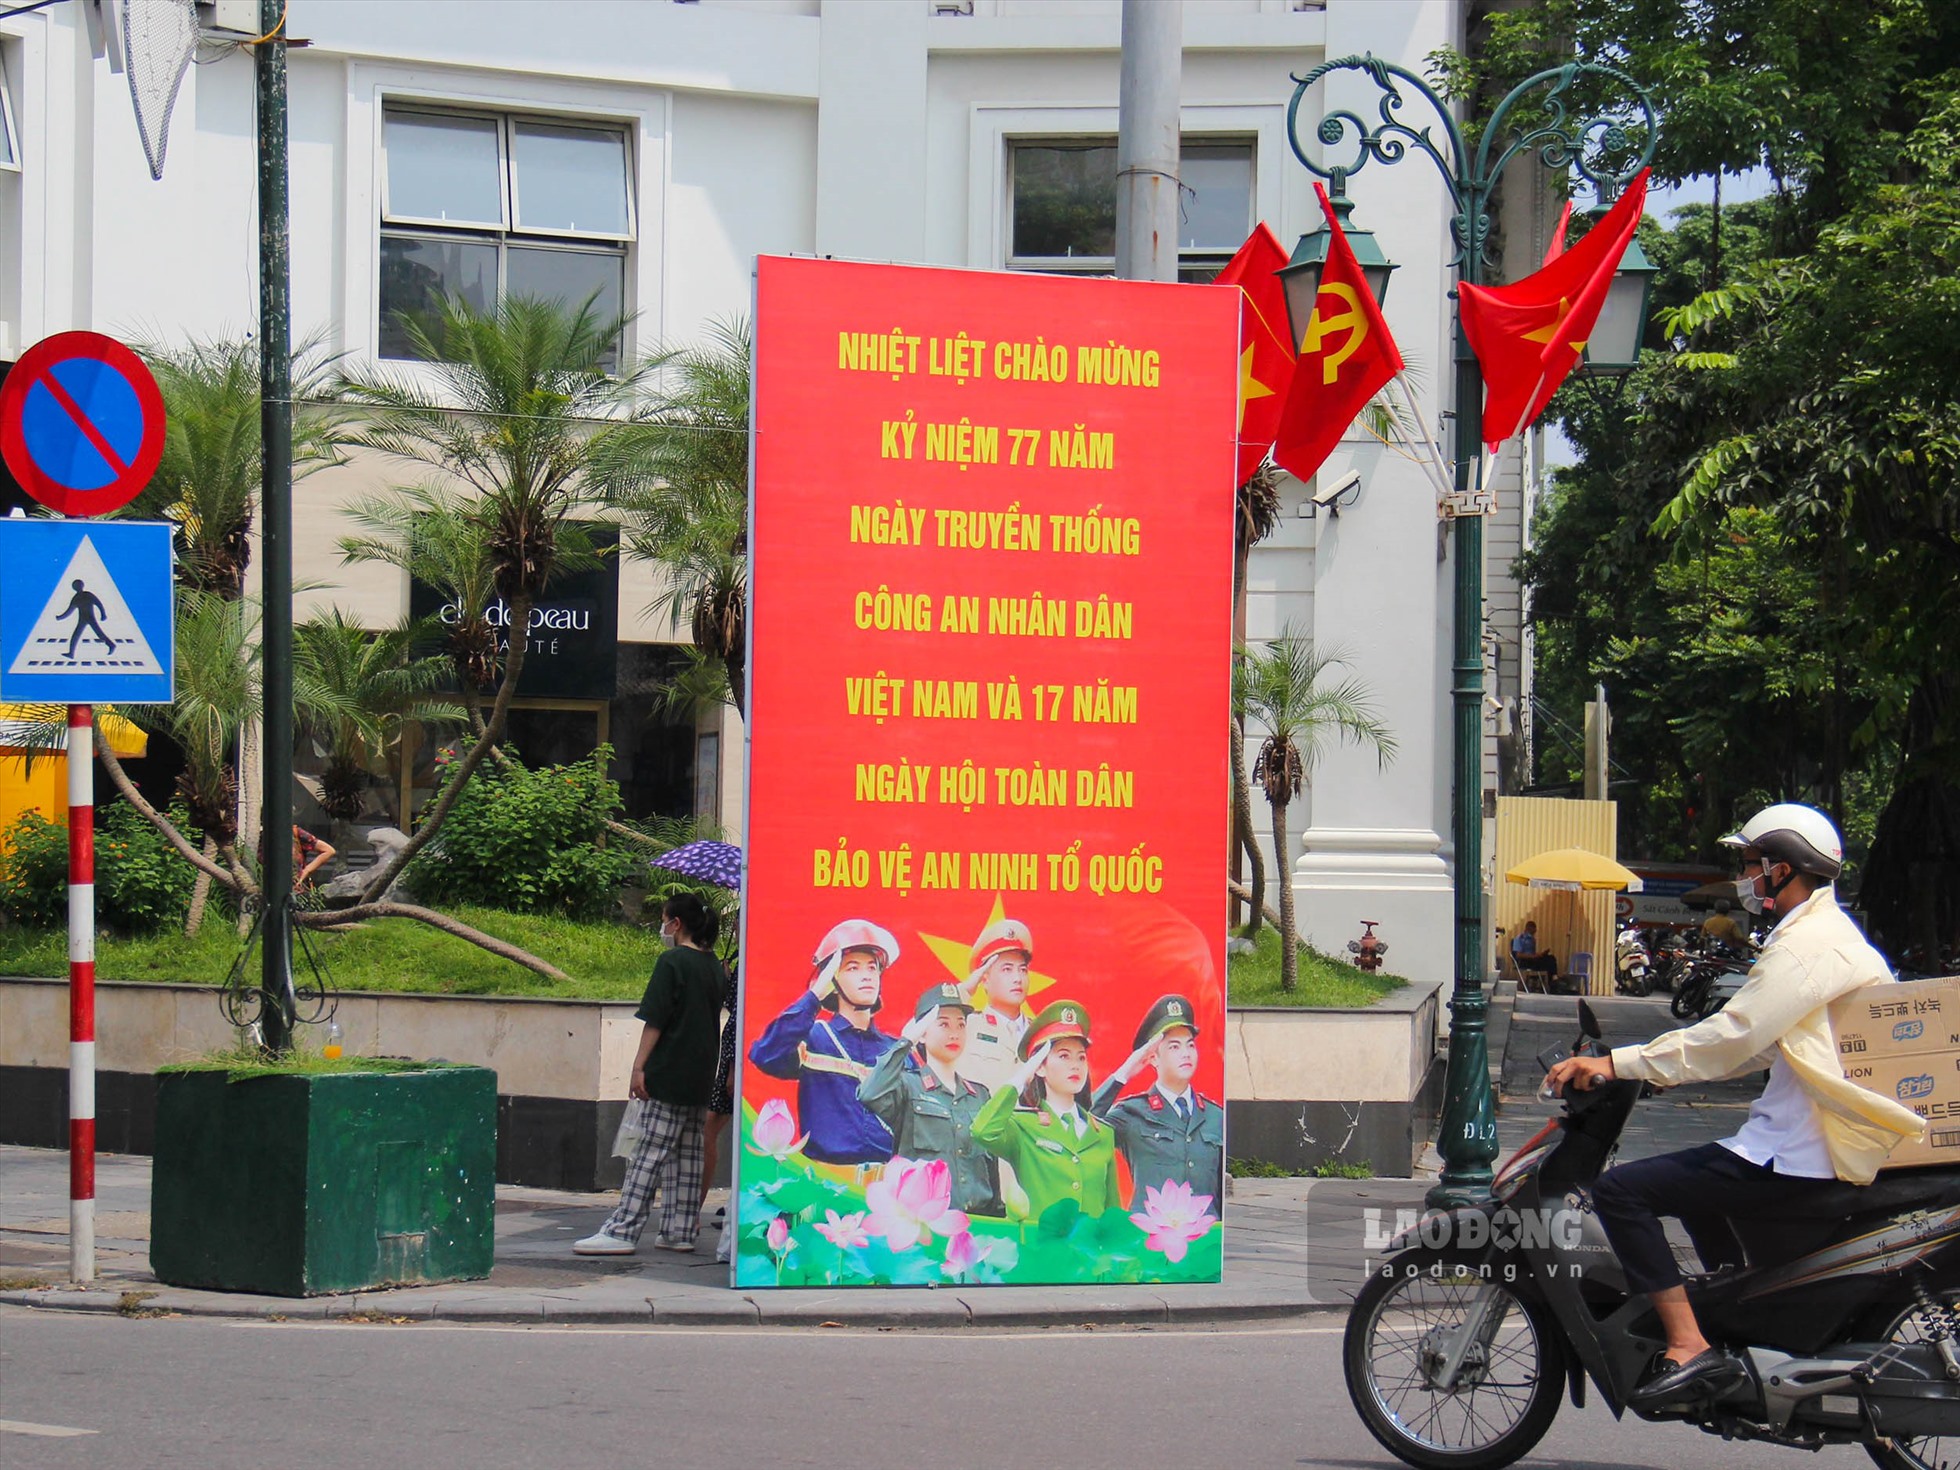 Ngoài ra, nhiều tấm áp phích khổ lớn với khẩu hiệu “Nhiệt liệt chào mừng kỷ niệm 77 năm Ngày truyền thống lực lượng Công an nhân dân Việt Nam và 17 năm Ngày Hội toàn dân bảo vệ an ninh tổ quốc” cũng được trang trí trên một số tuyến phố lớn ở Hà Nội.